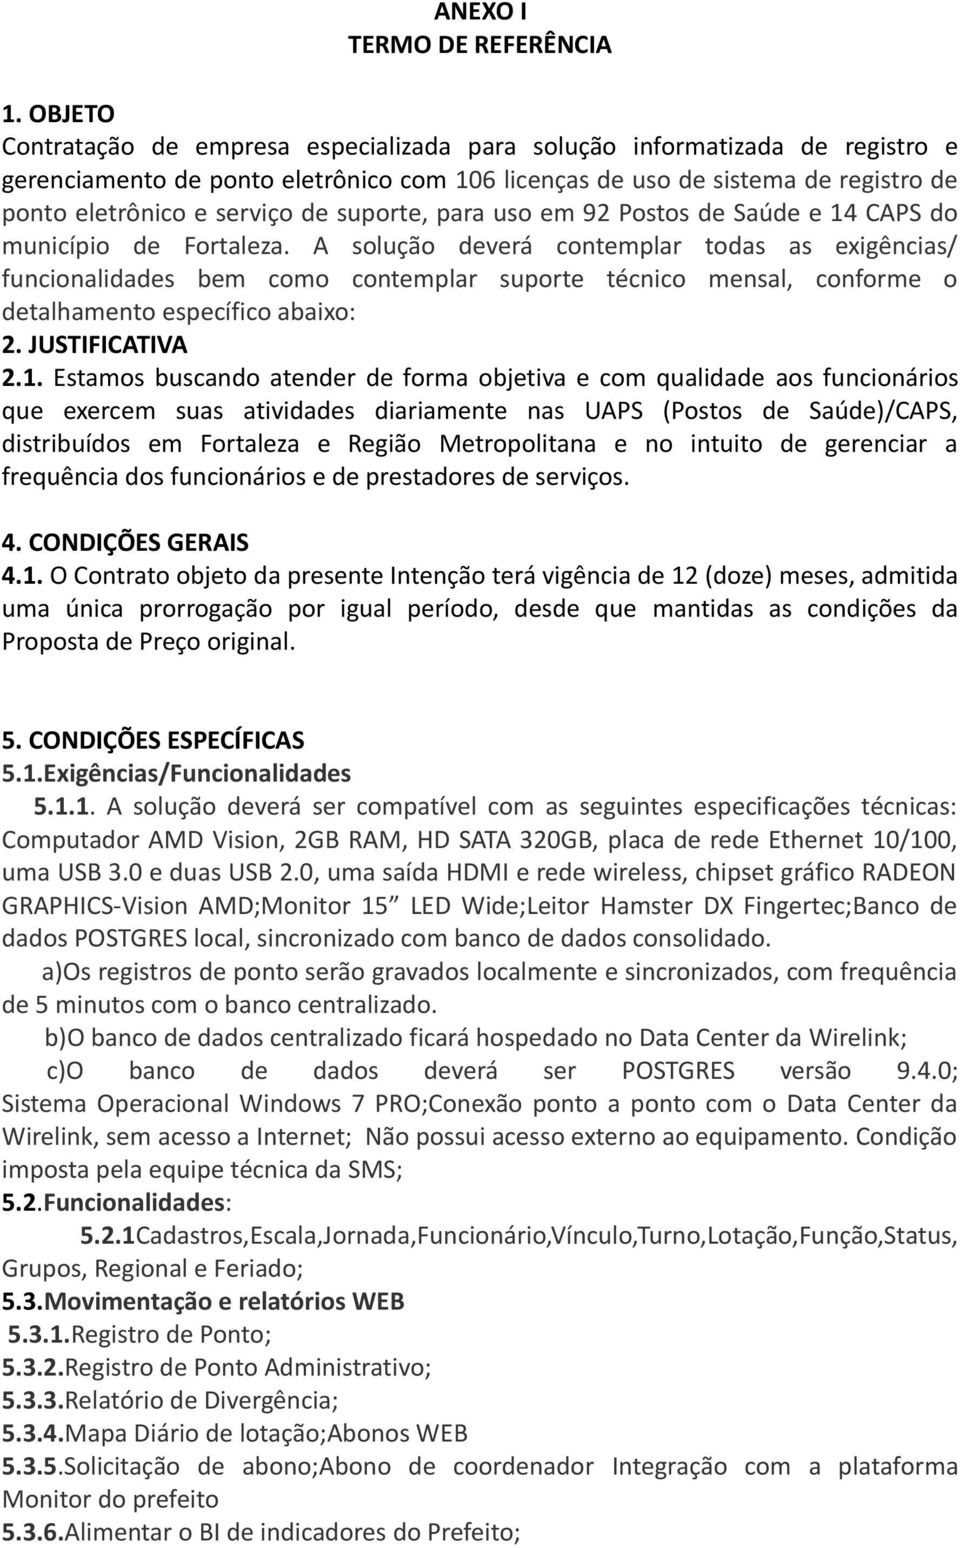 suporte, para uso em 92 Postos de Saúde e 14 CAPS do município de Fortaleza.